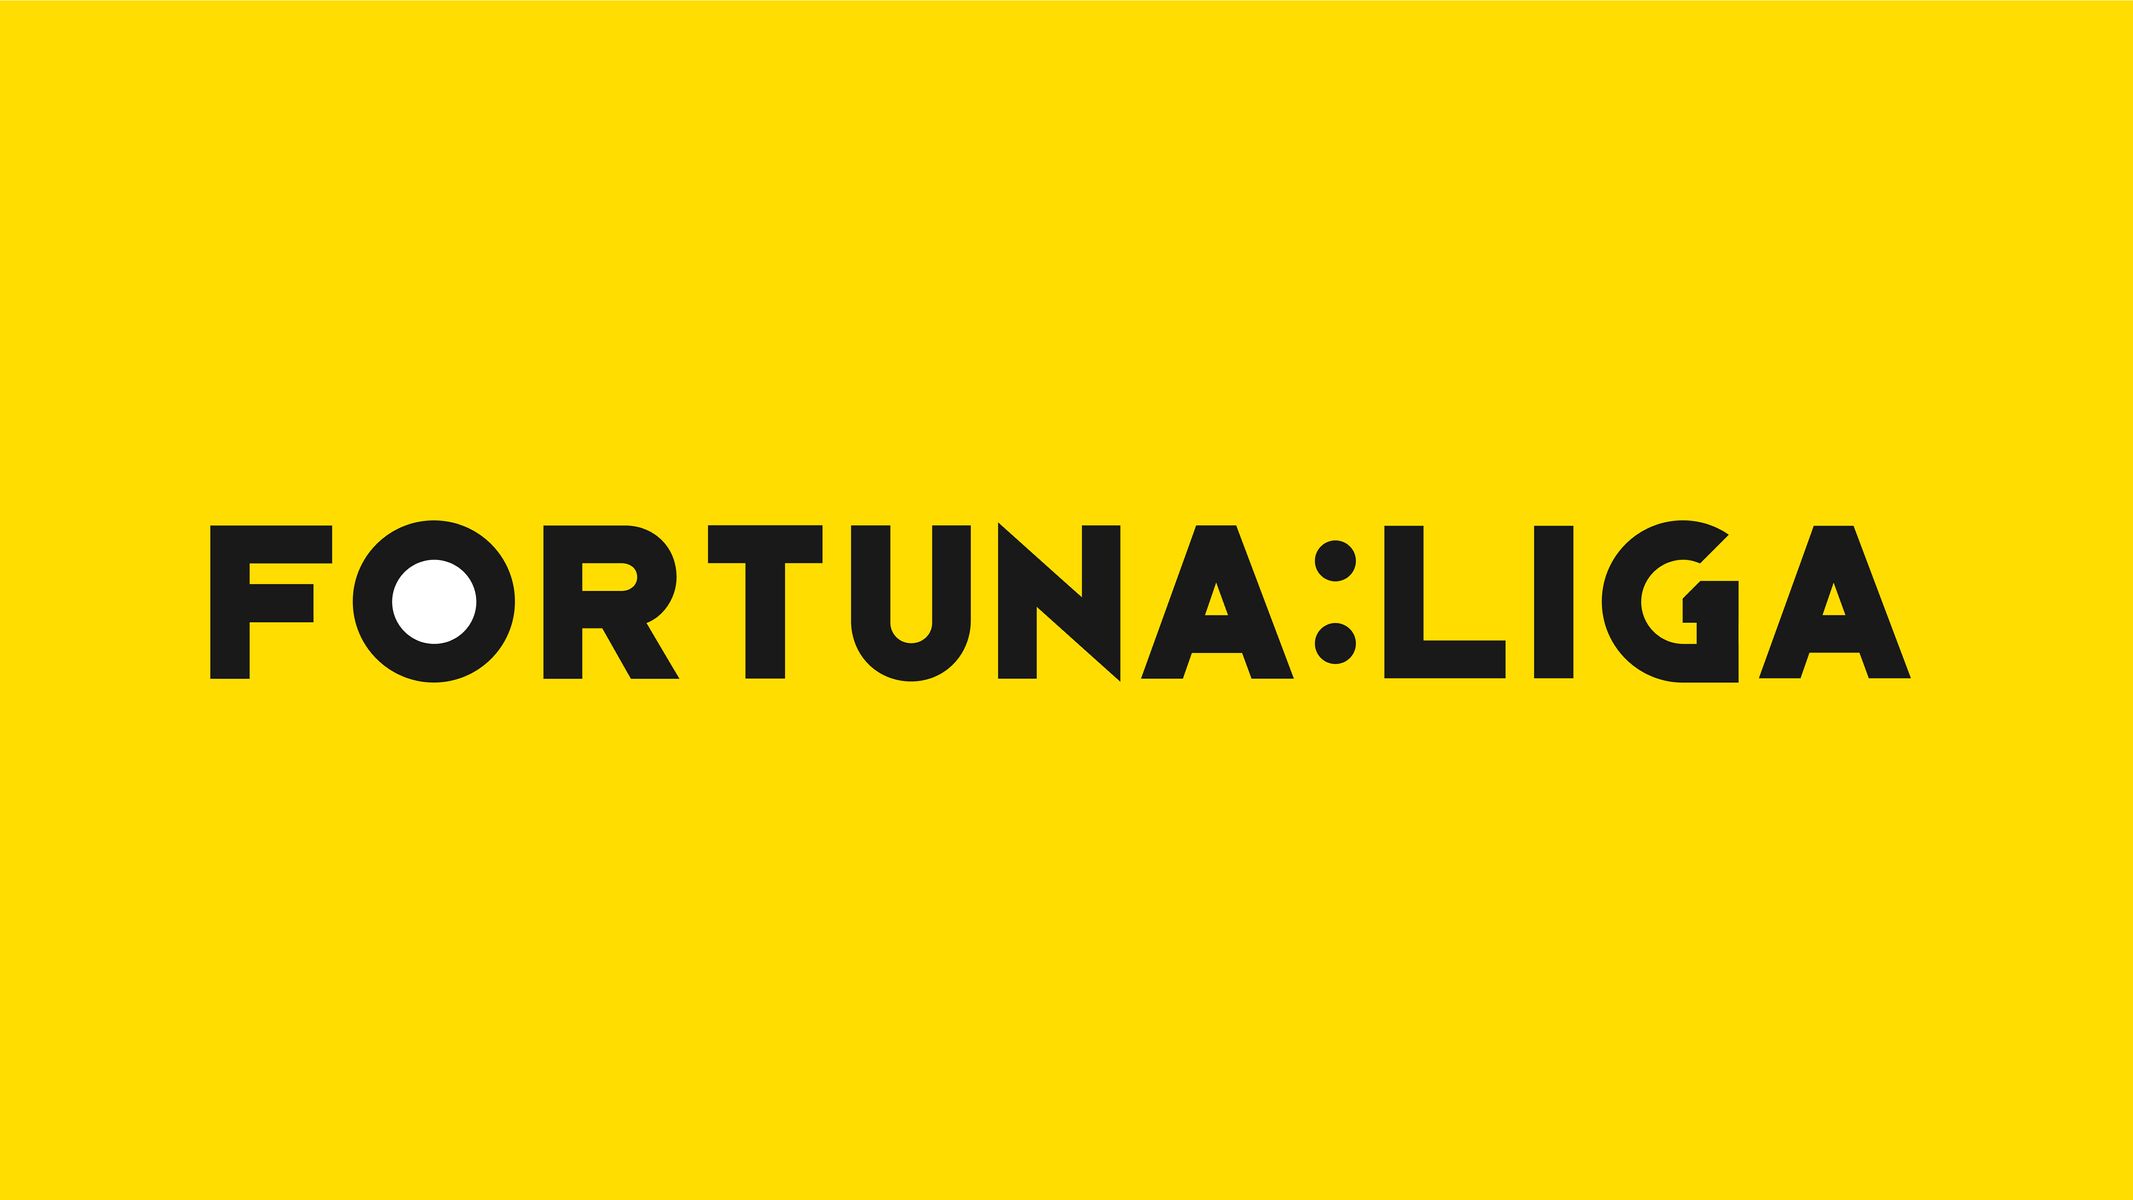 Fortuna:Liga logo